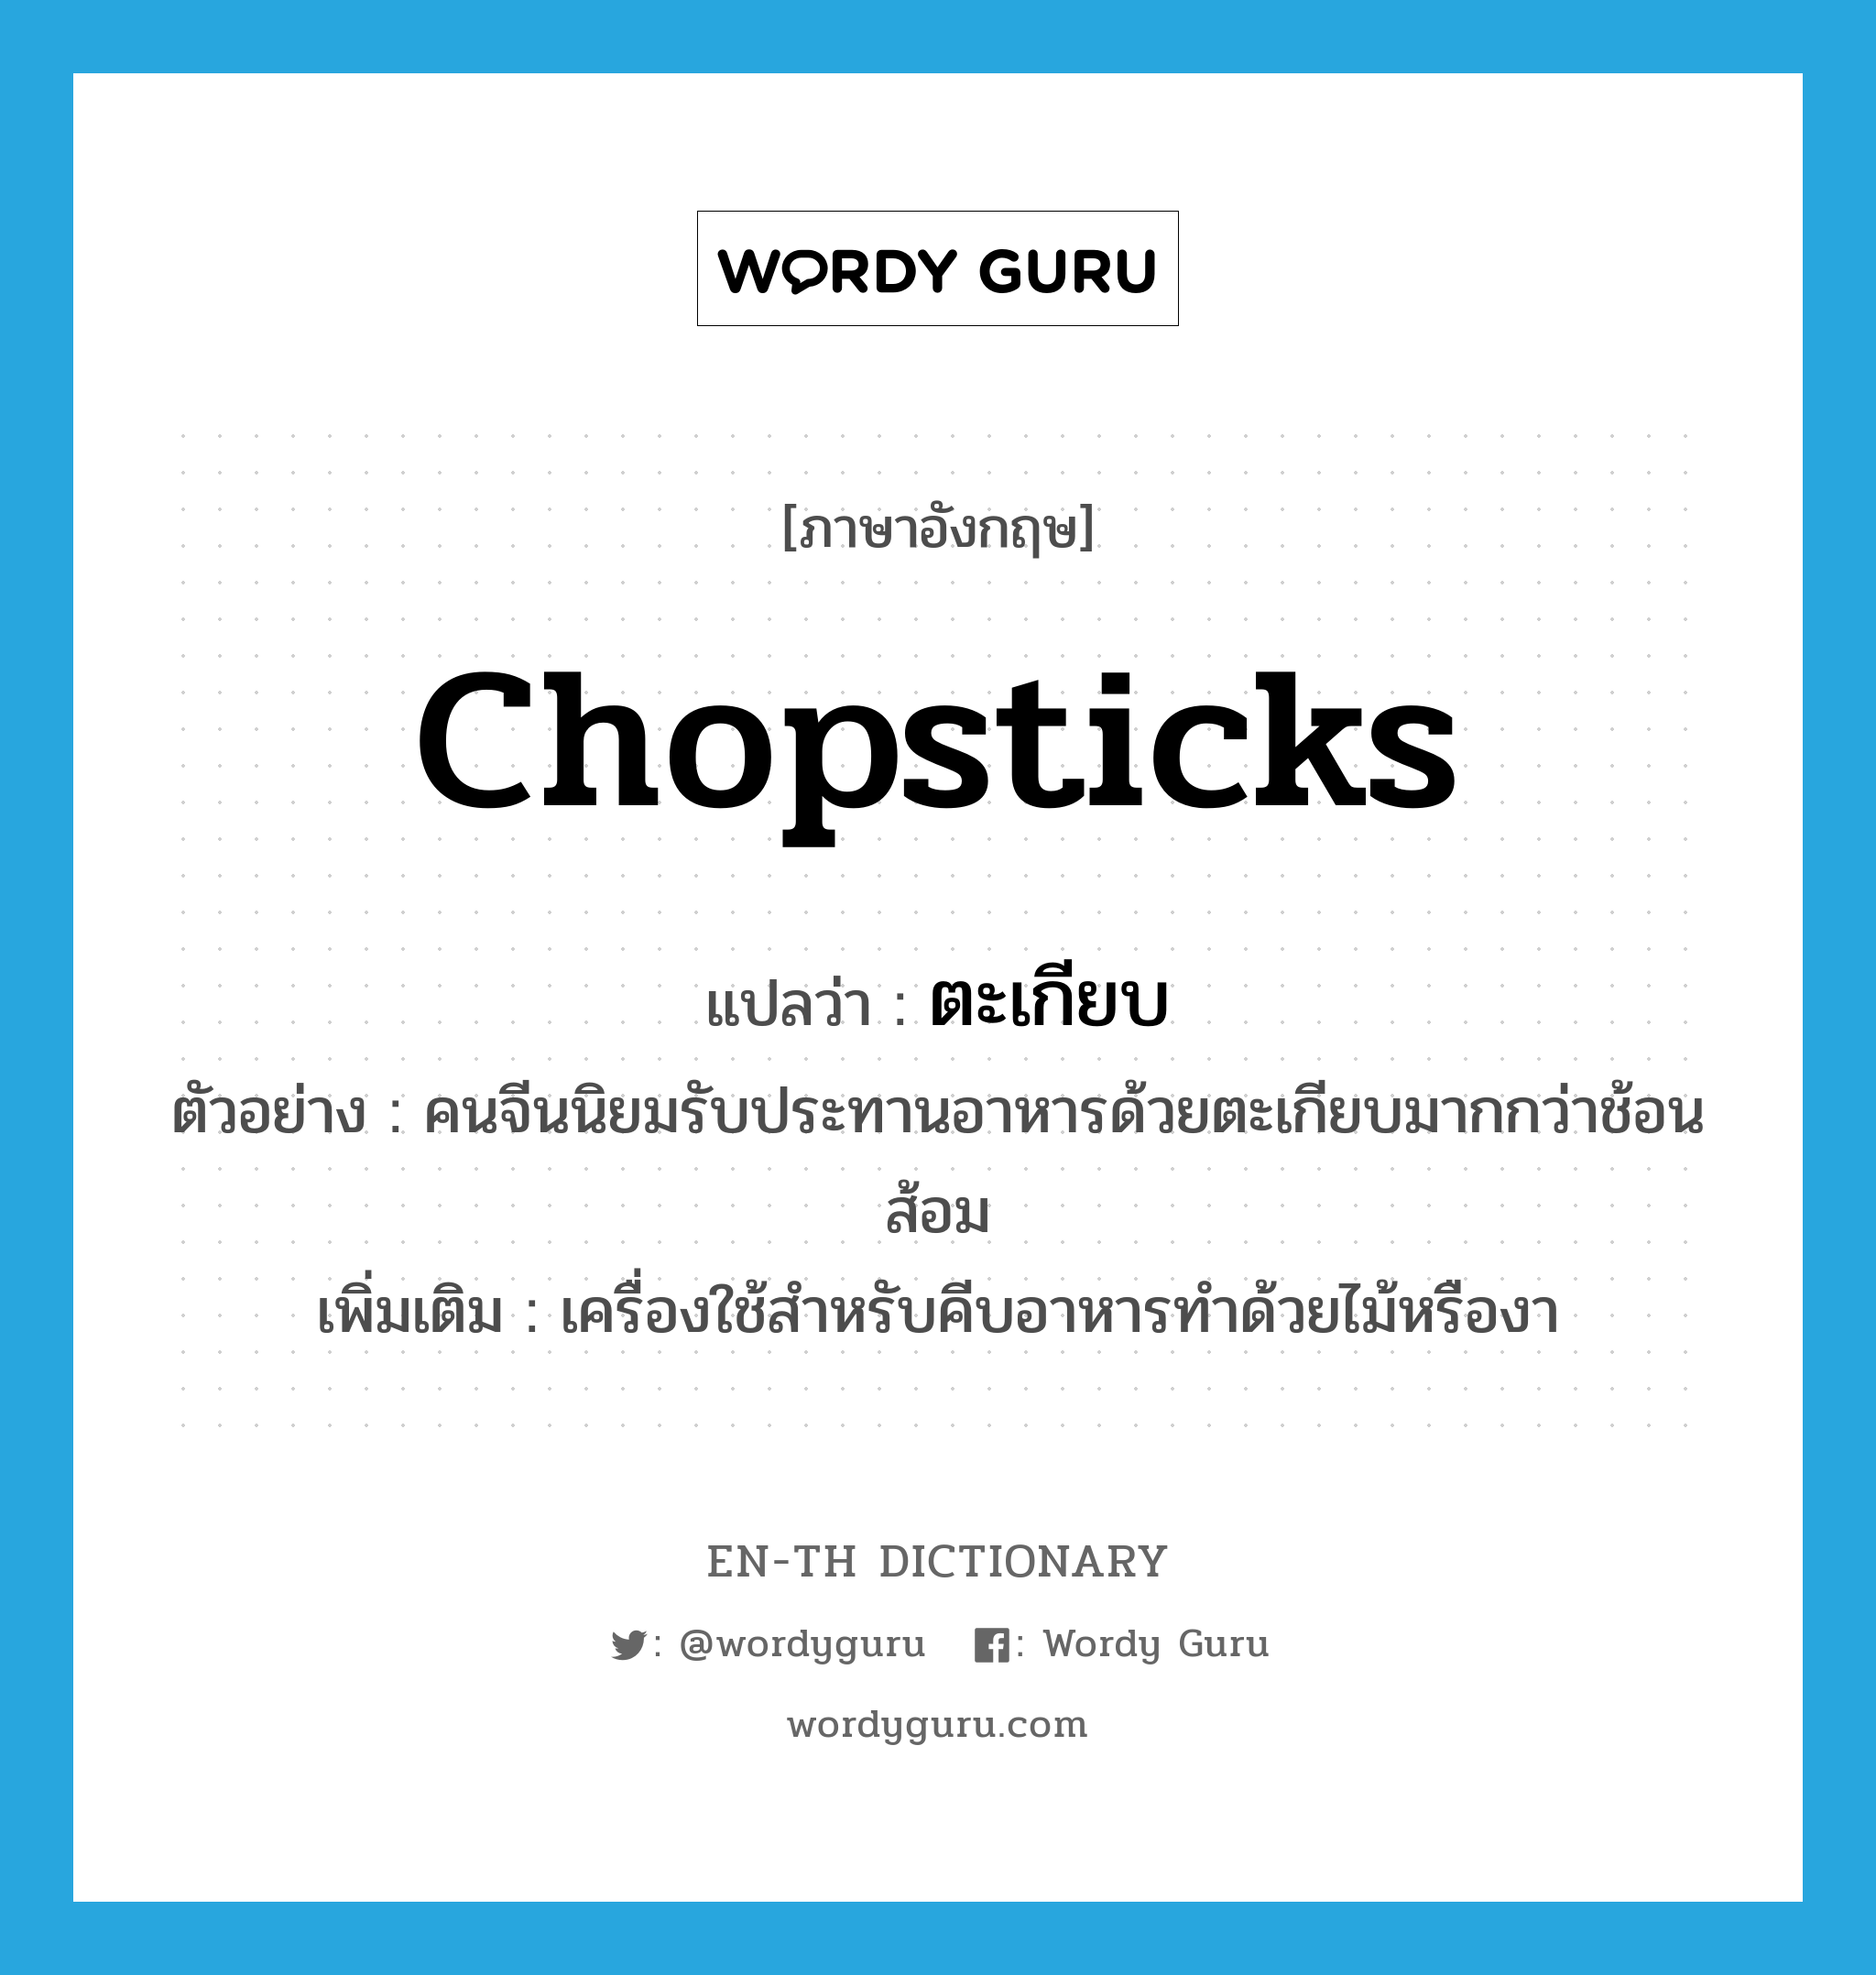 chopsticks แปลว่า?, คำศัพท์ภาษาอังกฤษ chopsticks แปลว่า ตะเกียบ ประเภท N ตัวอย่าง คนจีนนิยมรับประทานอาหารด้วยตะเกียบมากกว่าช้อนส้อม เพิ่มเติม เครื่องใช้สำหรับคีบอาหารทำด้วยไม้หรืองา หมวด N